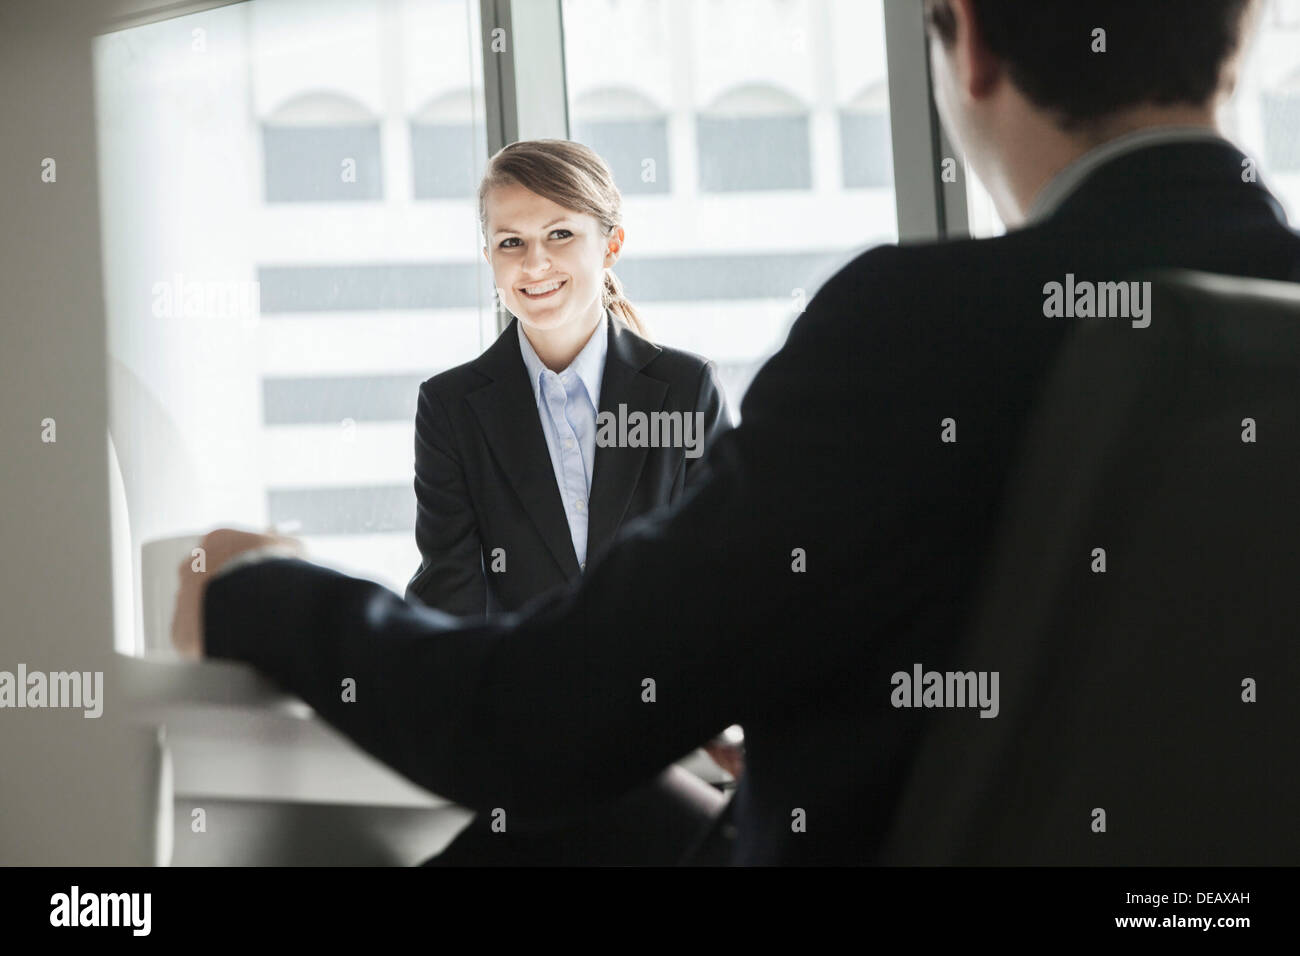 Zwei Geschäftsleute sitzen, Lächeln und sahen einander bei einem Business-meeting Stockfoto